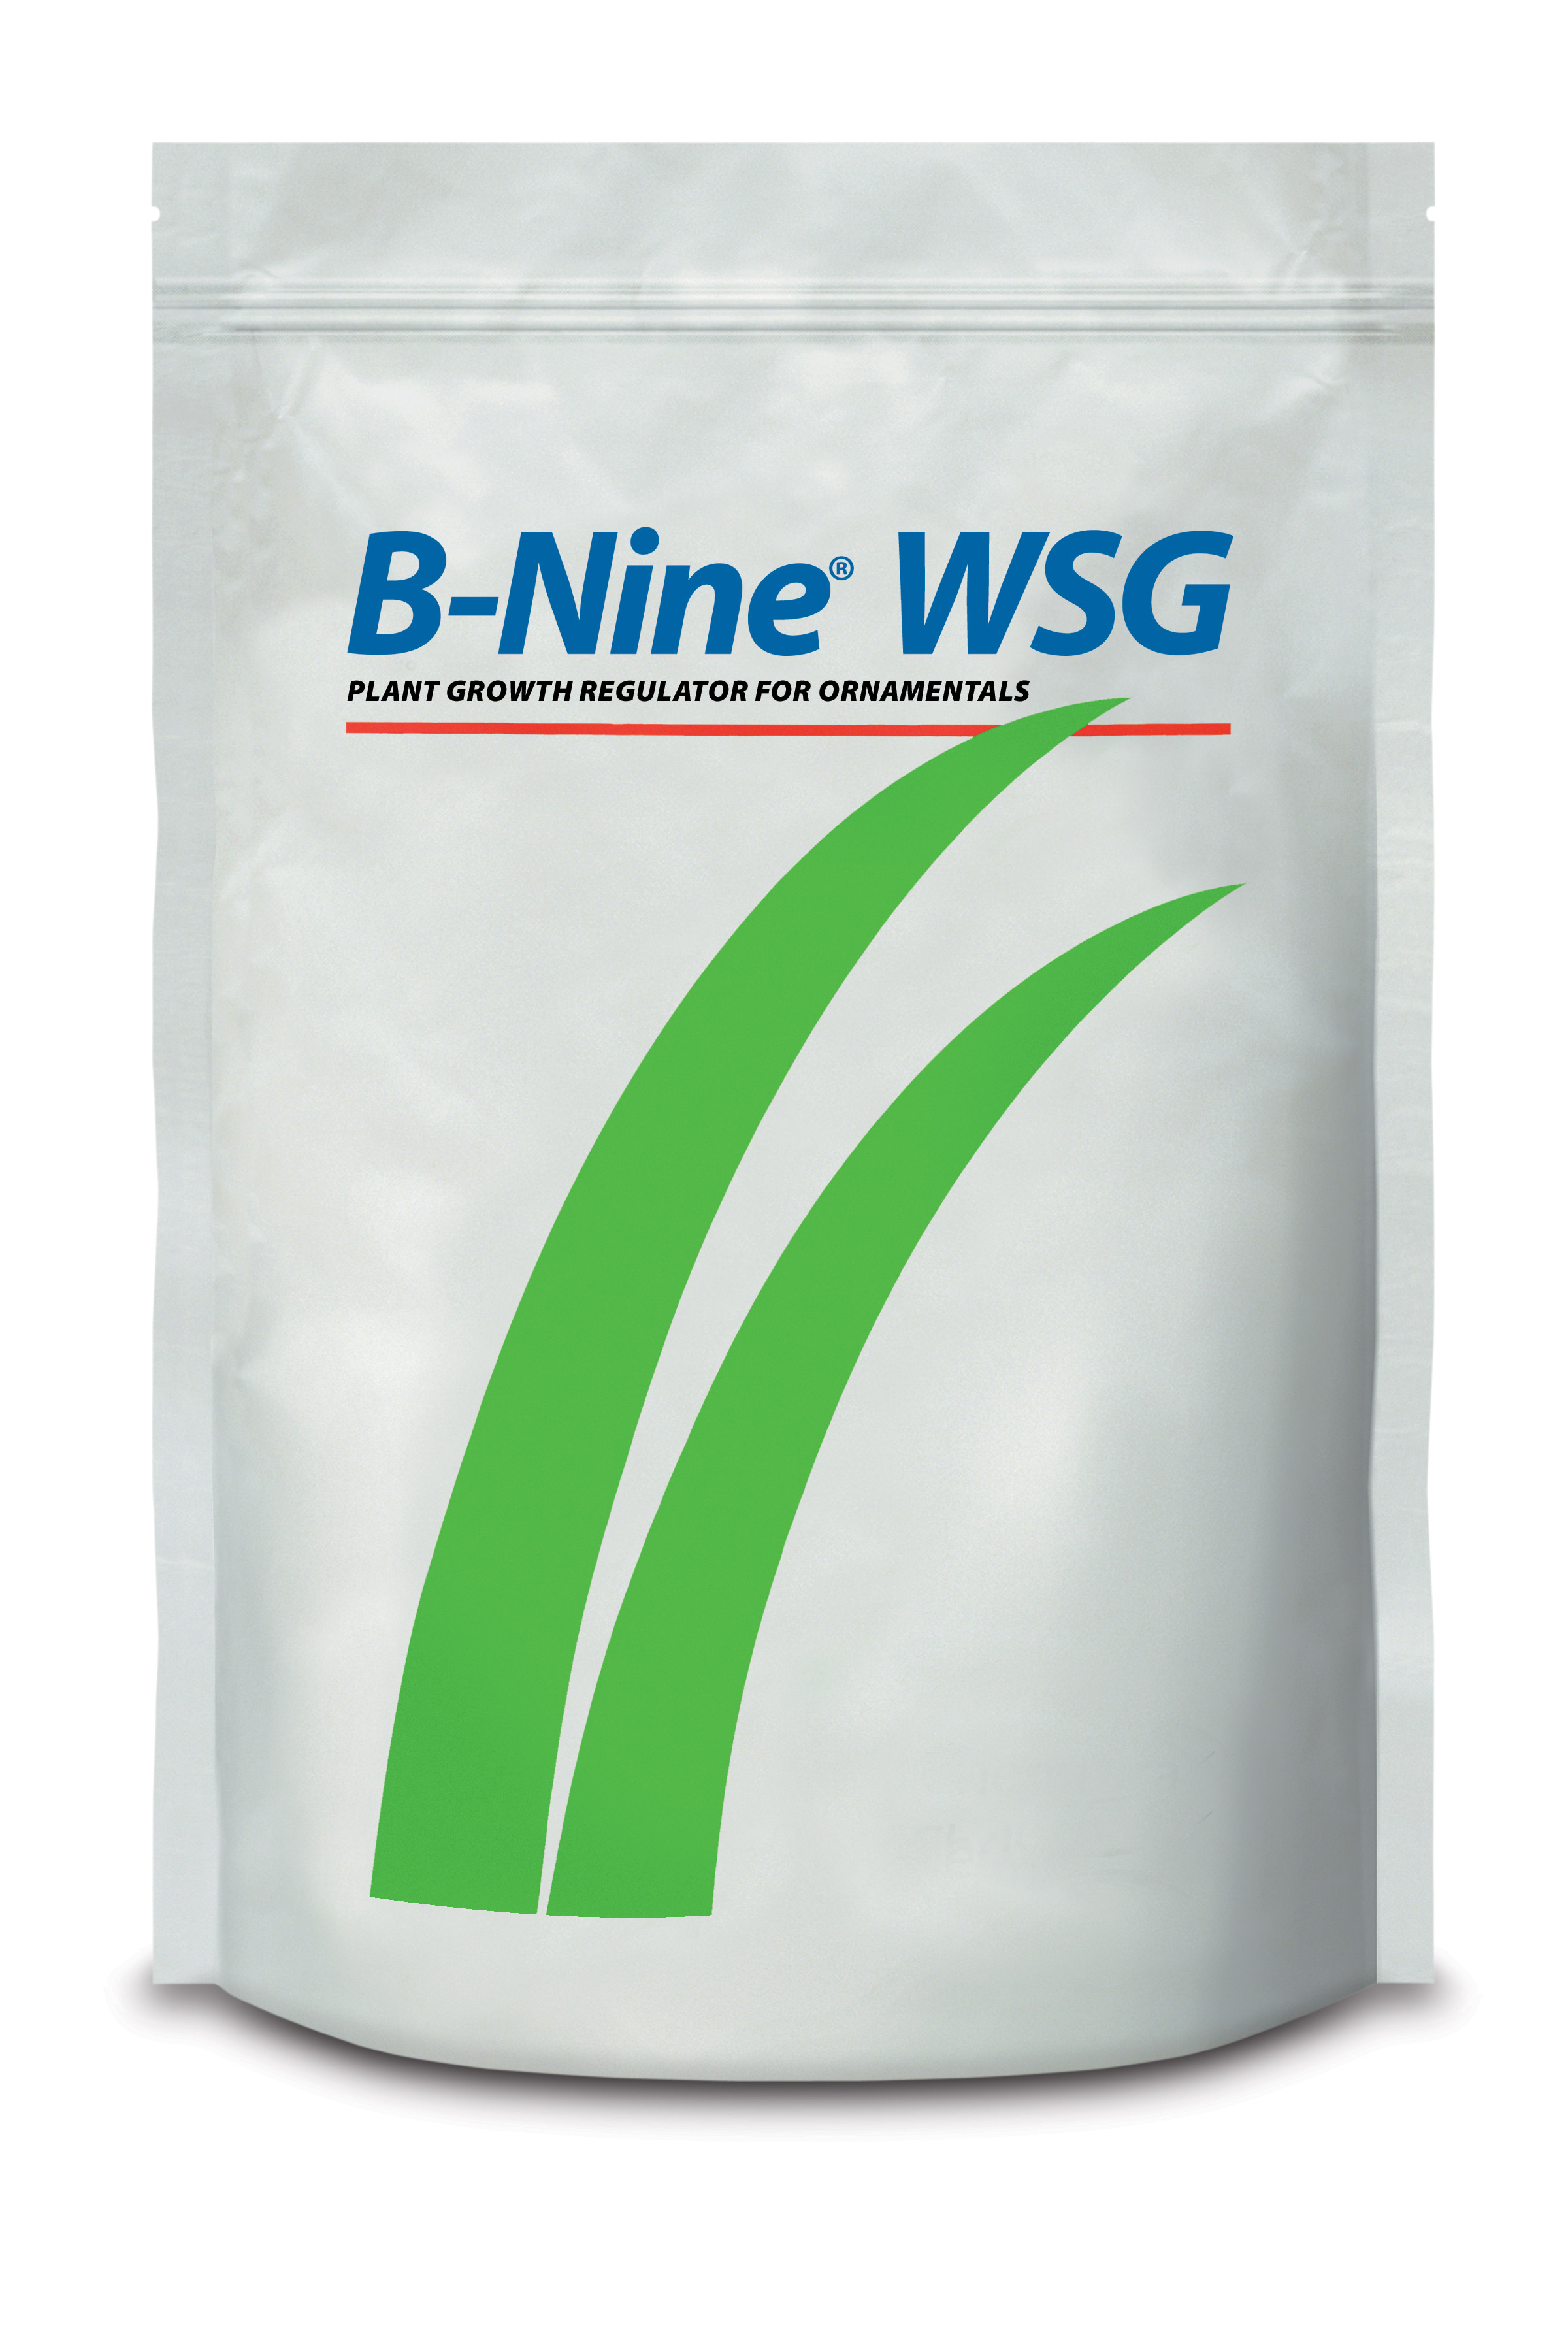 B-Nine® WSG 1 lb Bag - 12 per case